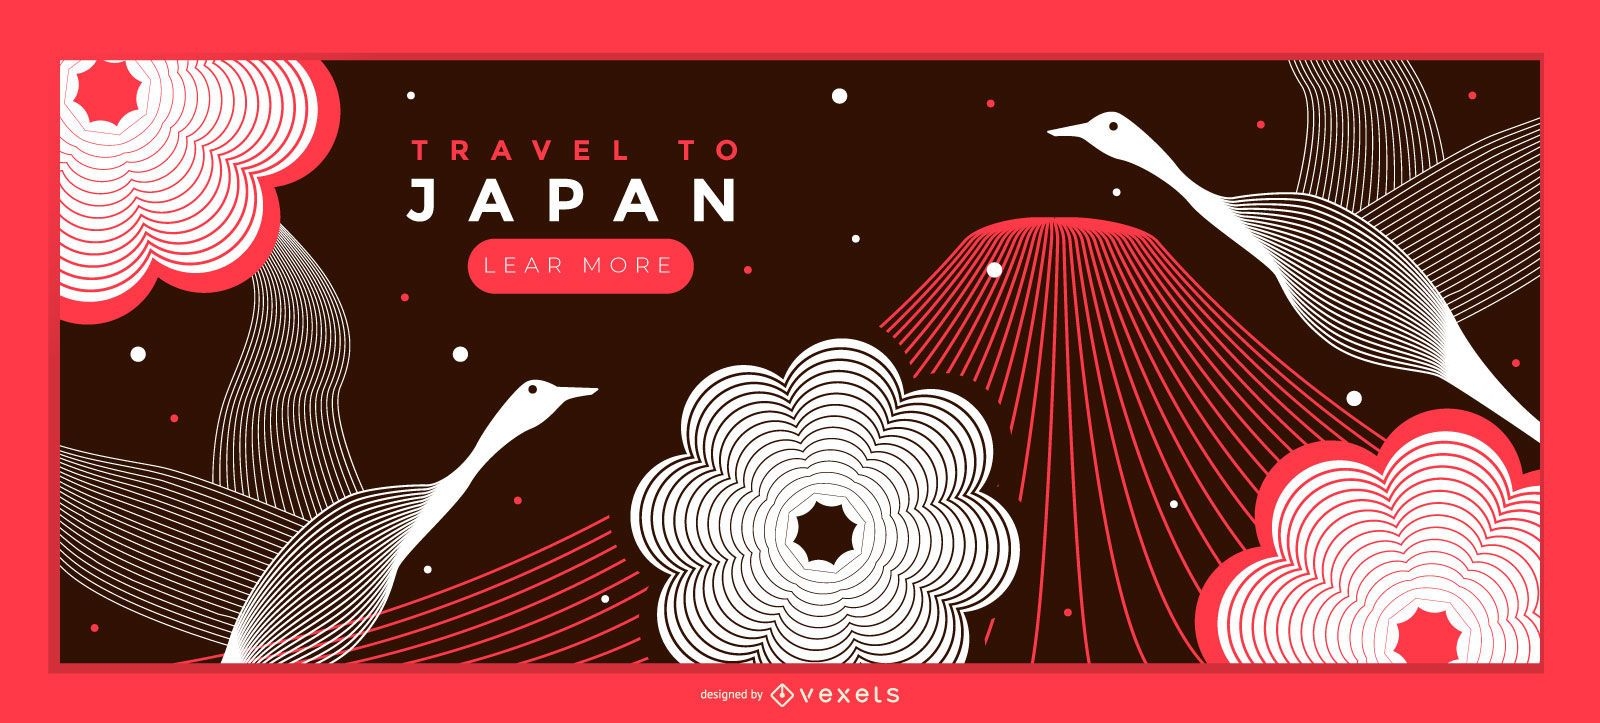 Travel Japan Landing Page Design